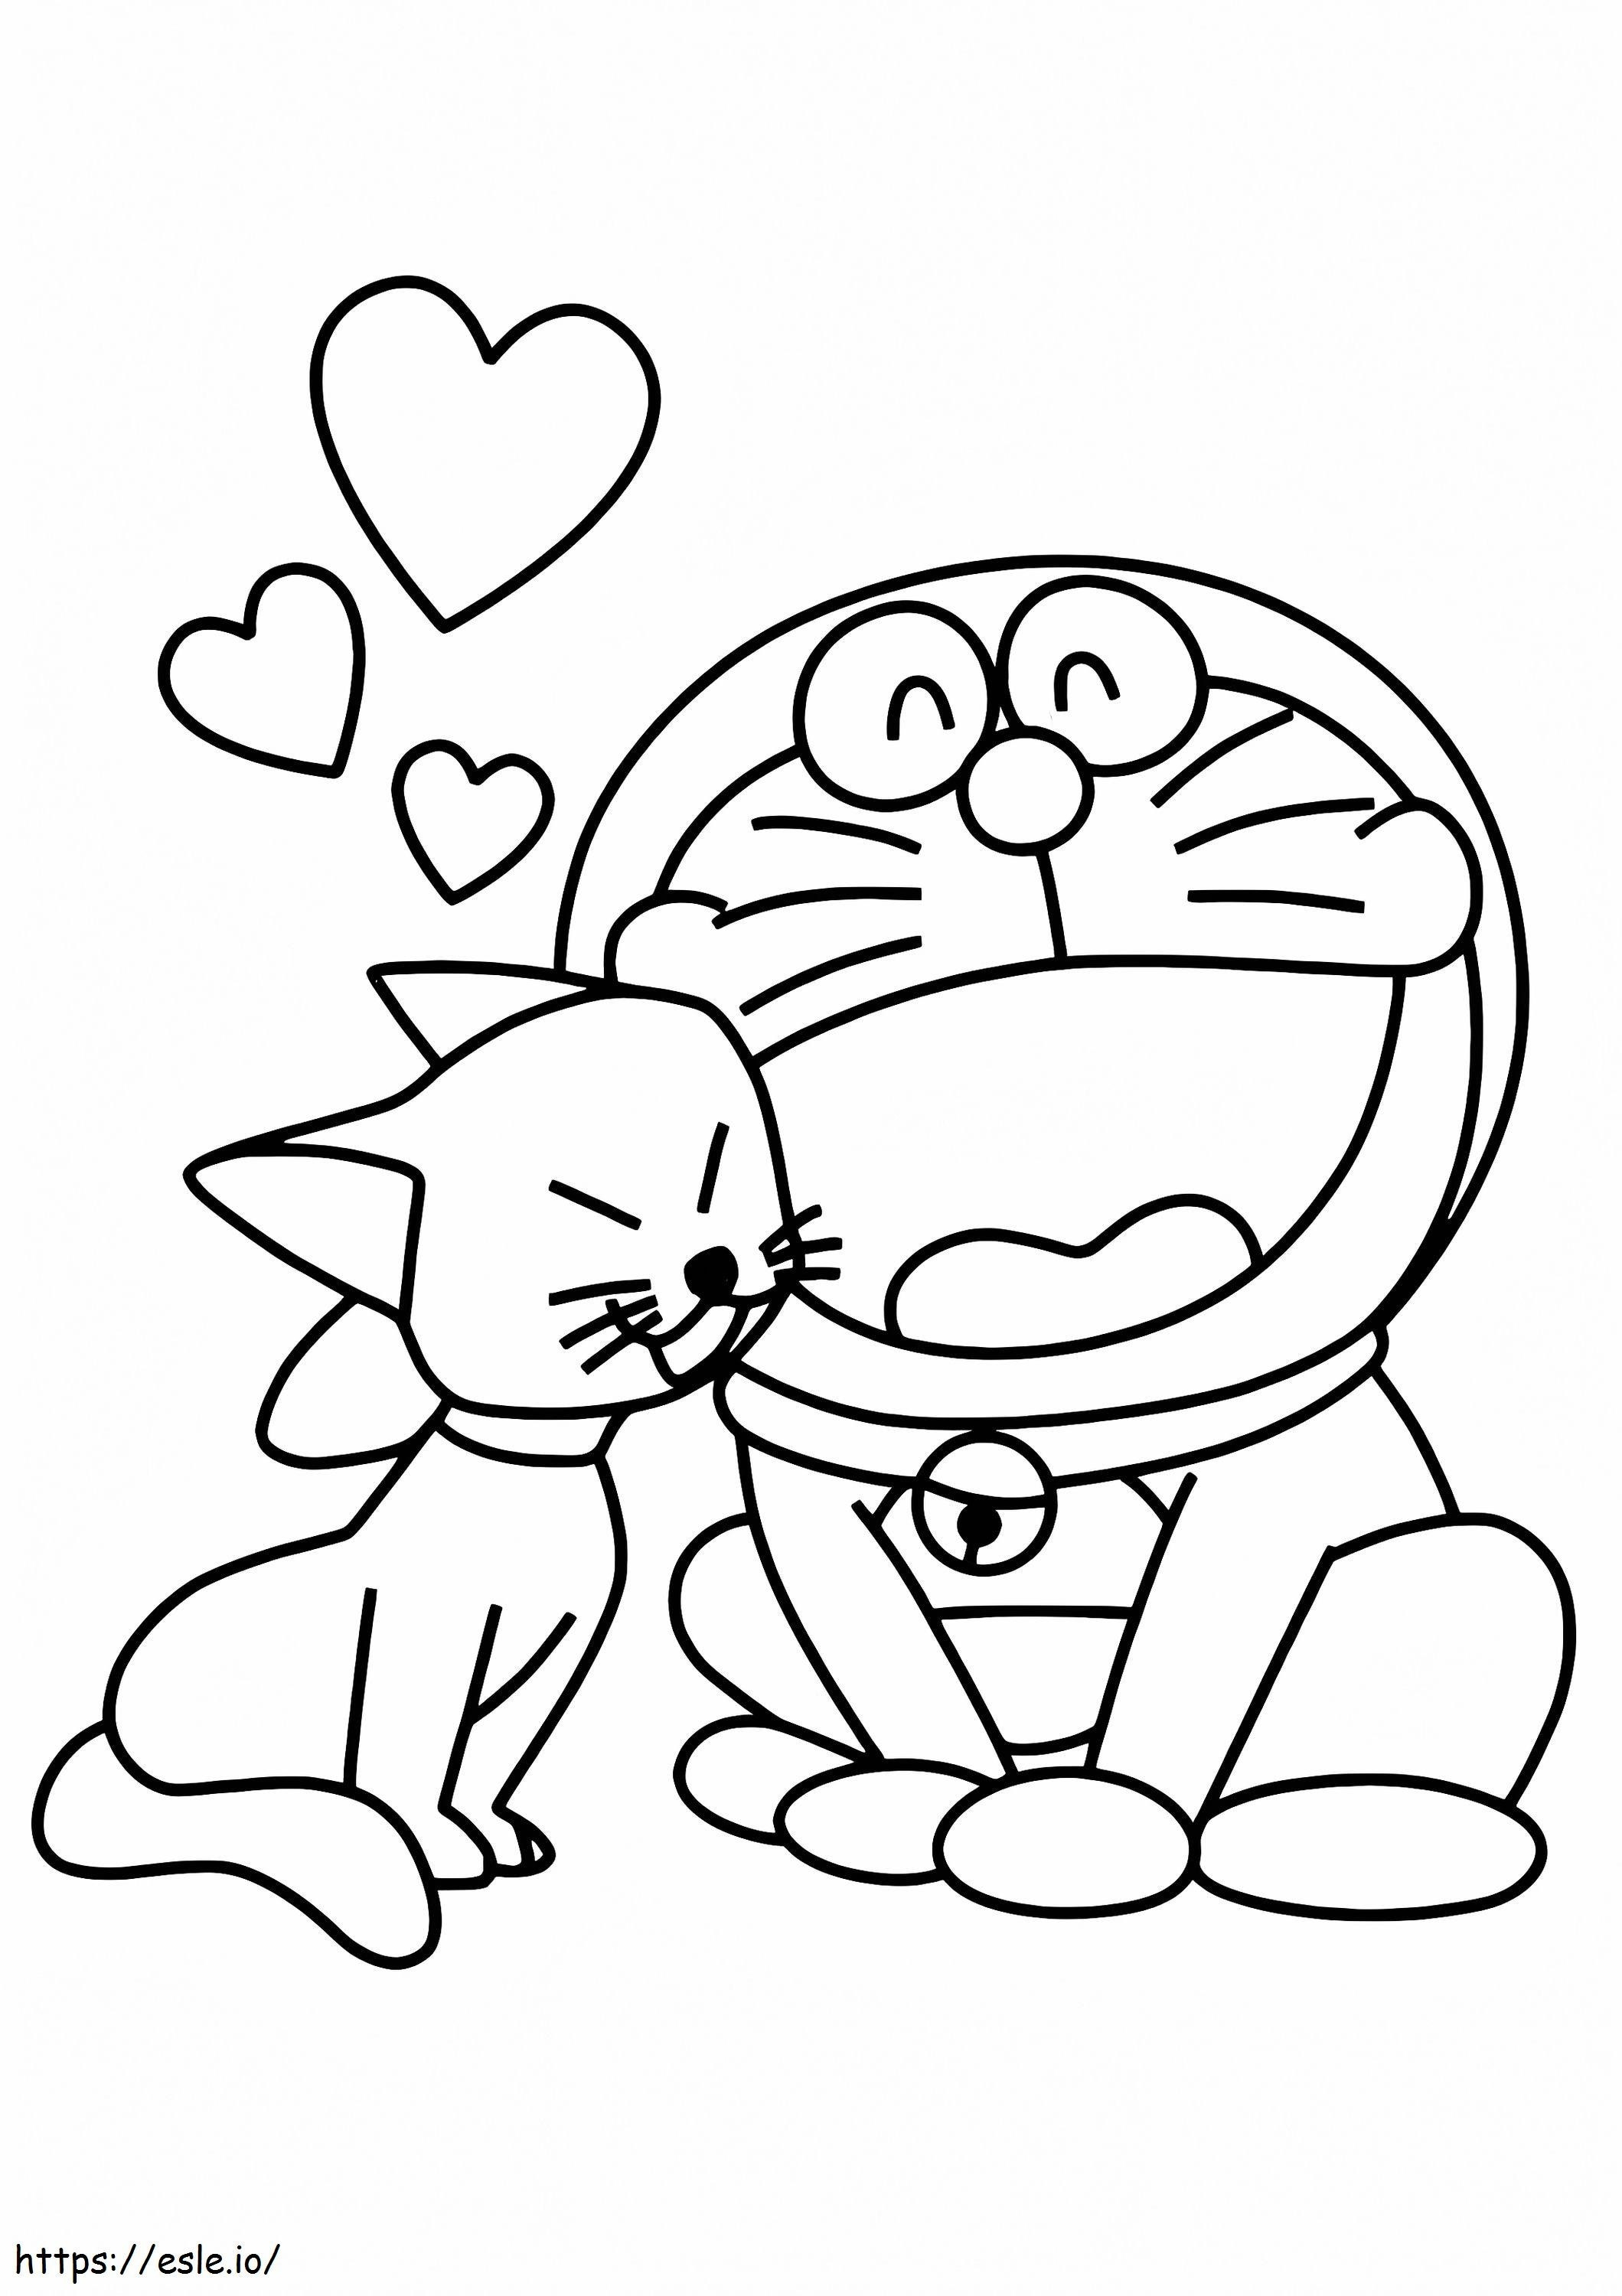 Coloriage 1531277093 Doraemon avec chat A4 à imprimer dessin